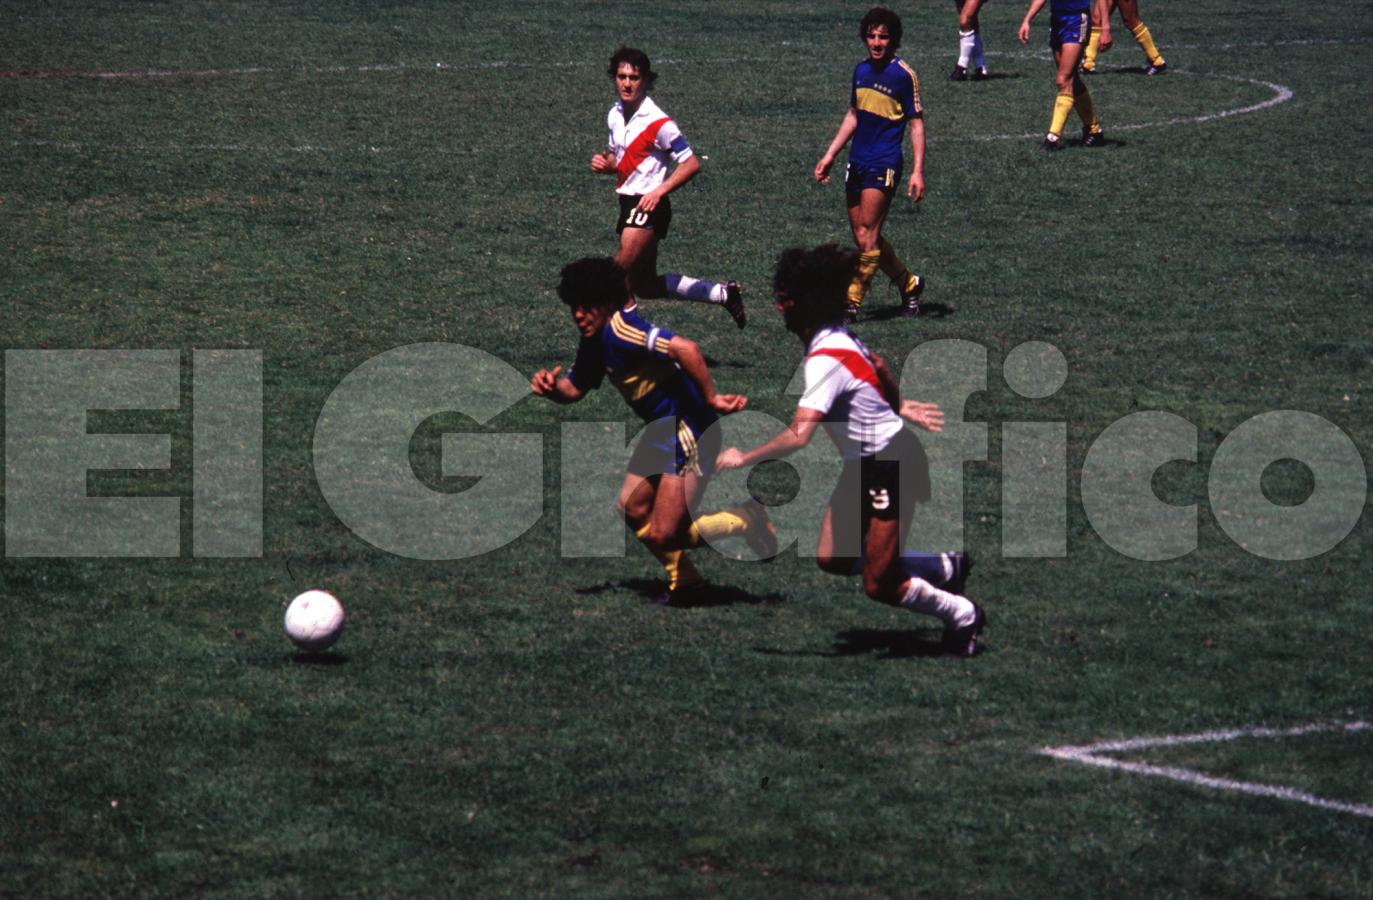 Nacional 1981: Boca 2 - River 3. Diego anotó un gol pero perdió el duelo con Kempes